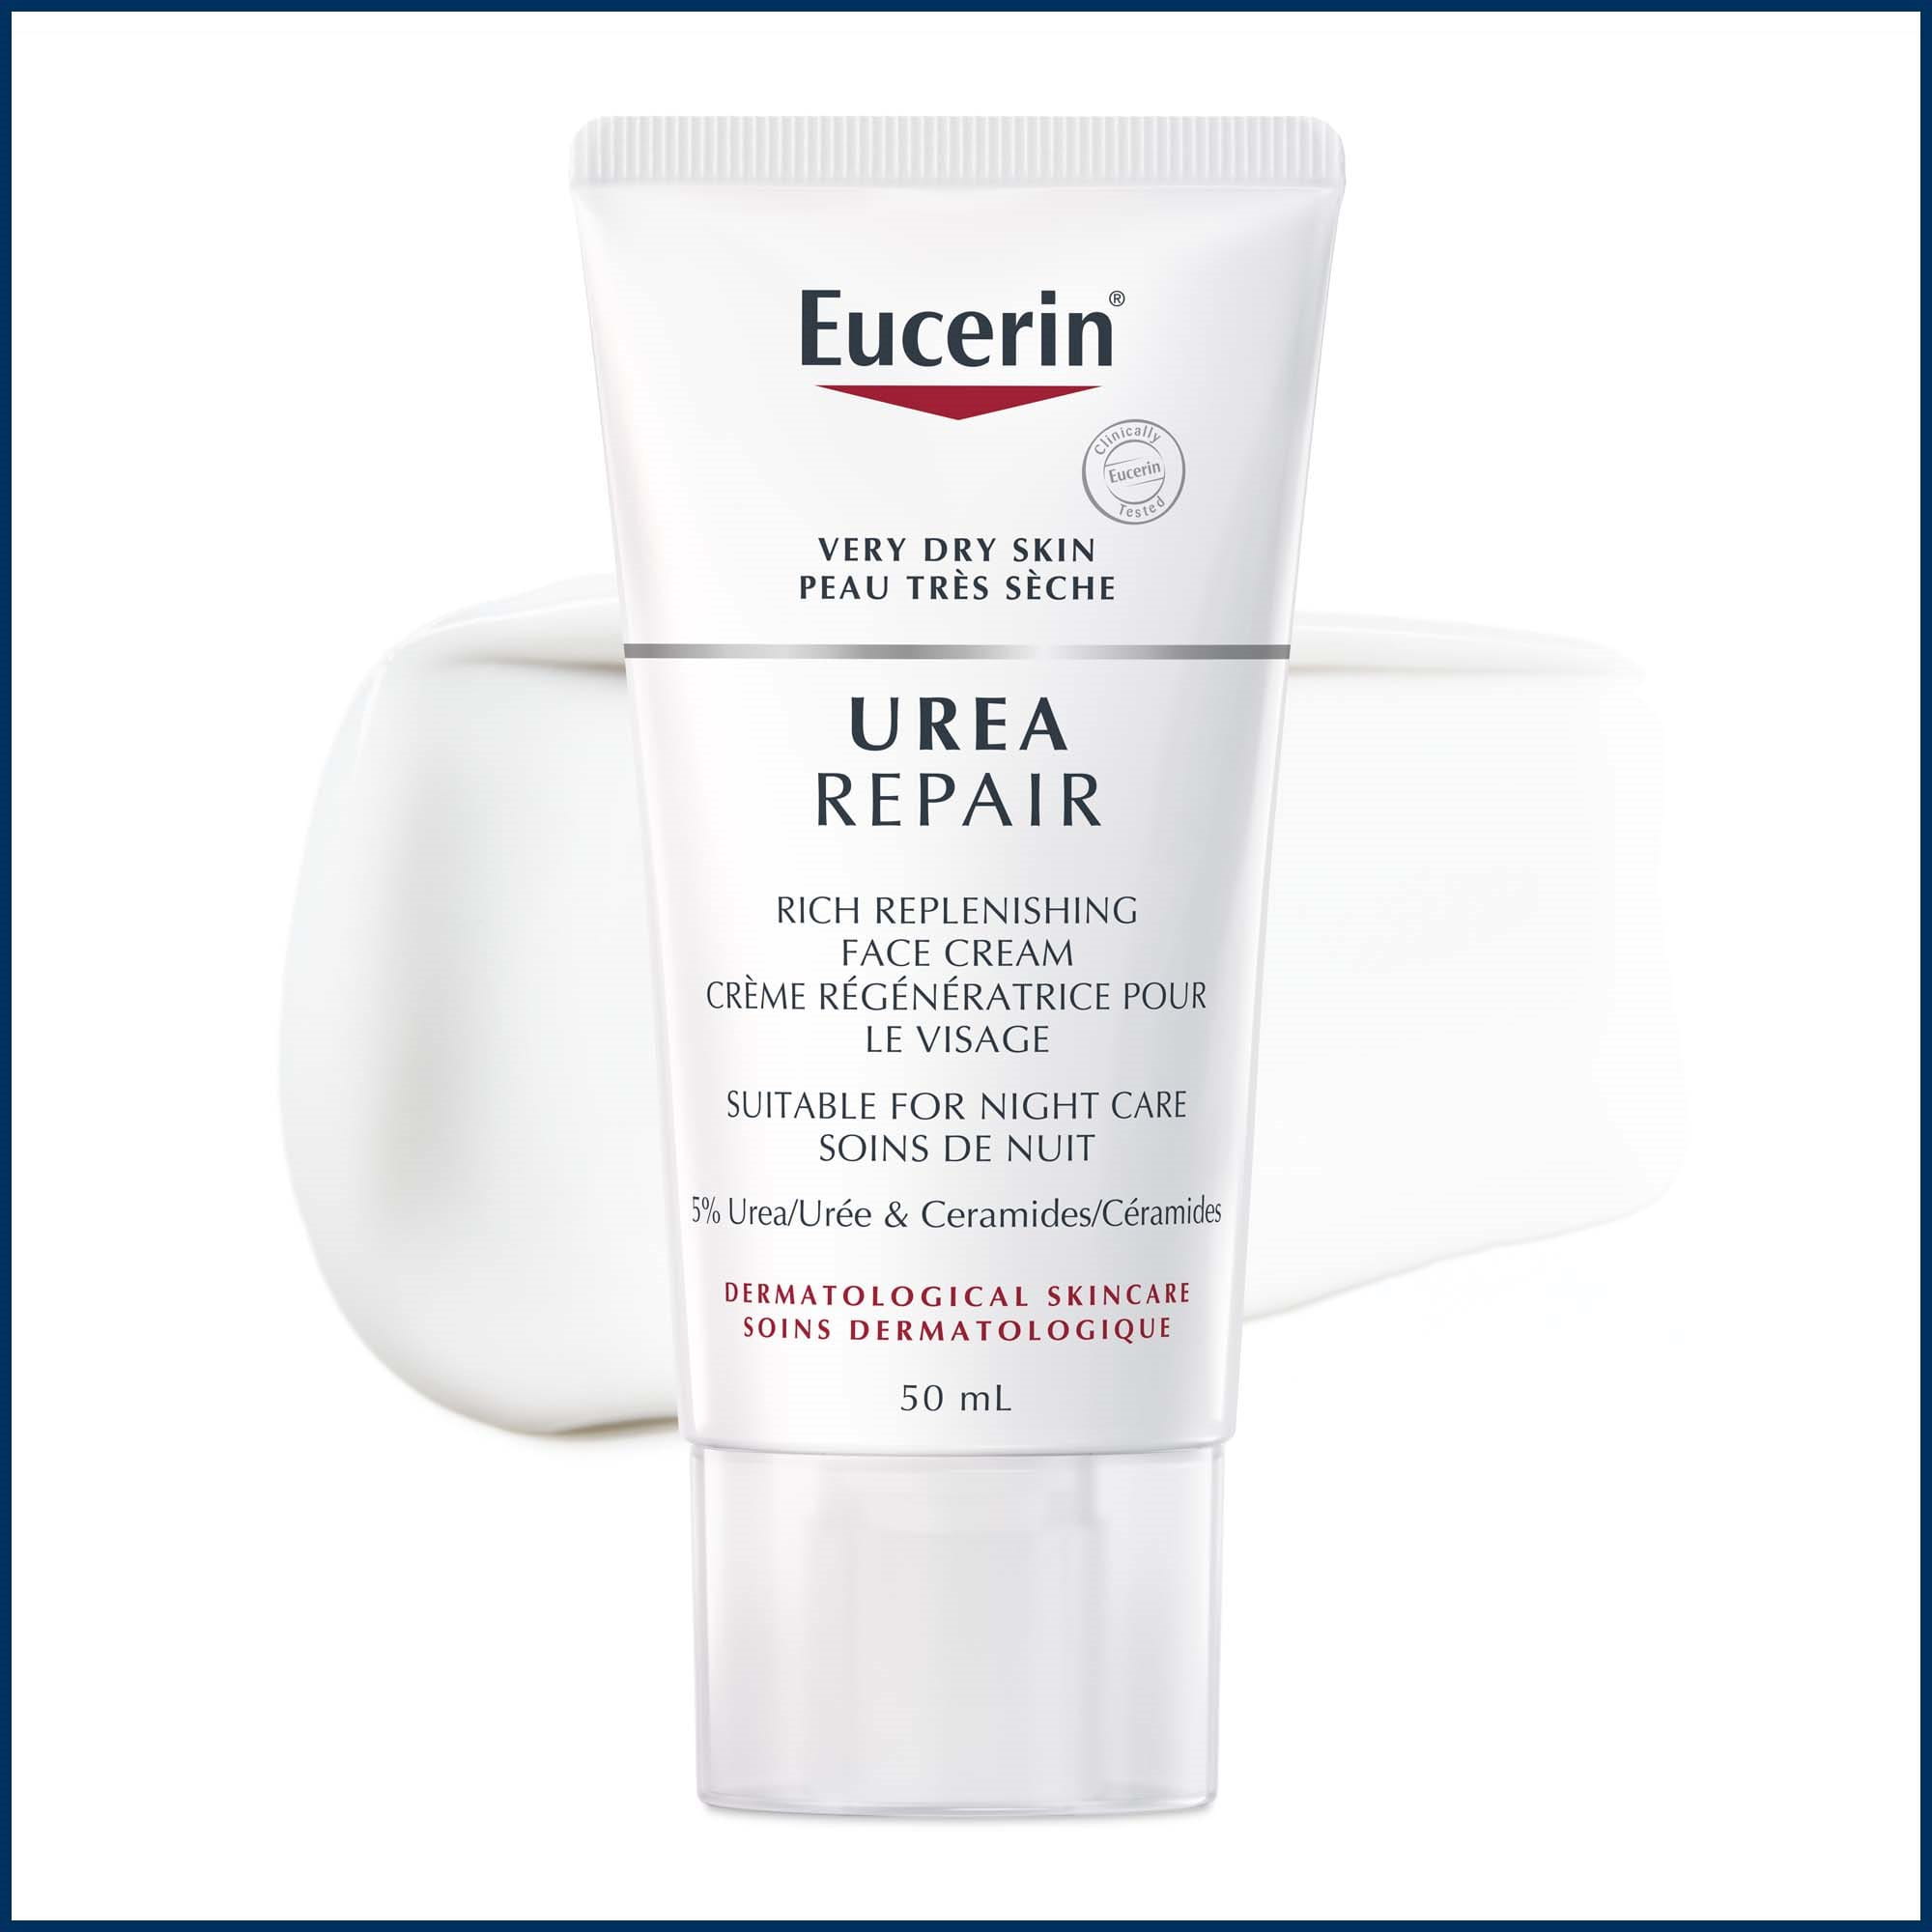 Gros plan du tube de Crème régénératrice pour le visage Urea Repair Eucerin soins de nuit de 50 mL, avec texture du produit en arrière-plan.